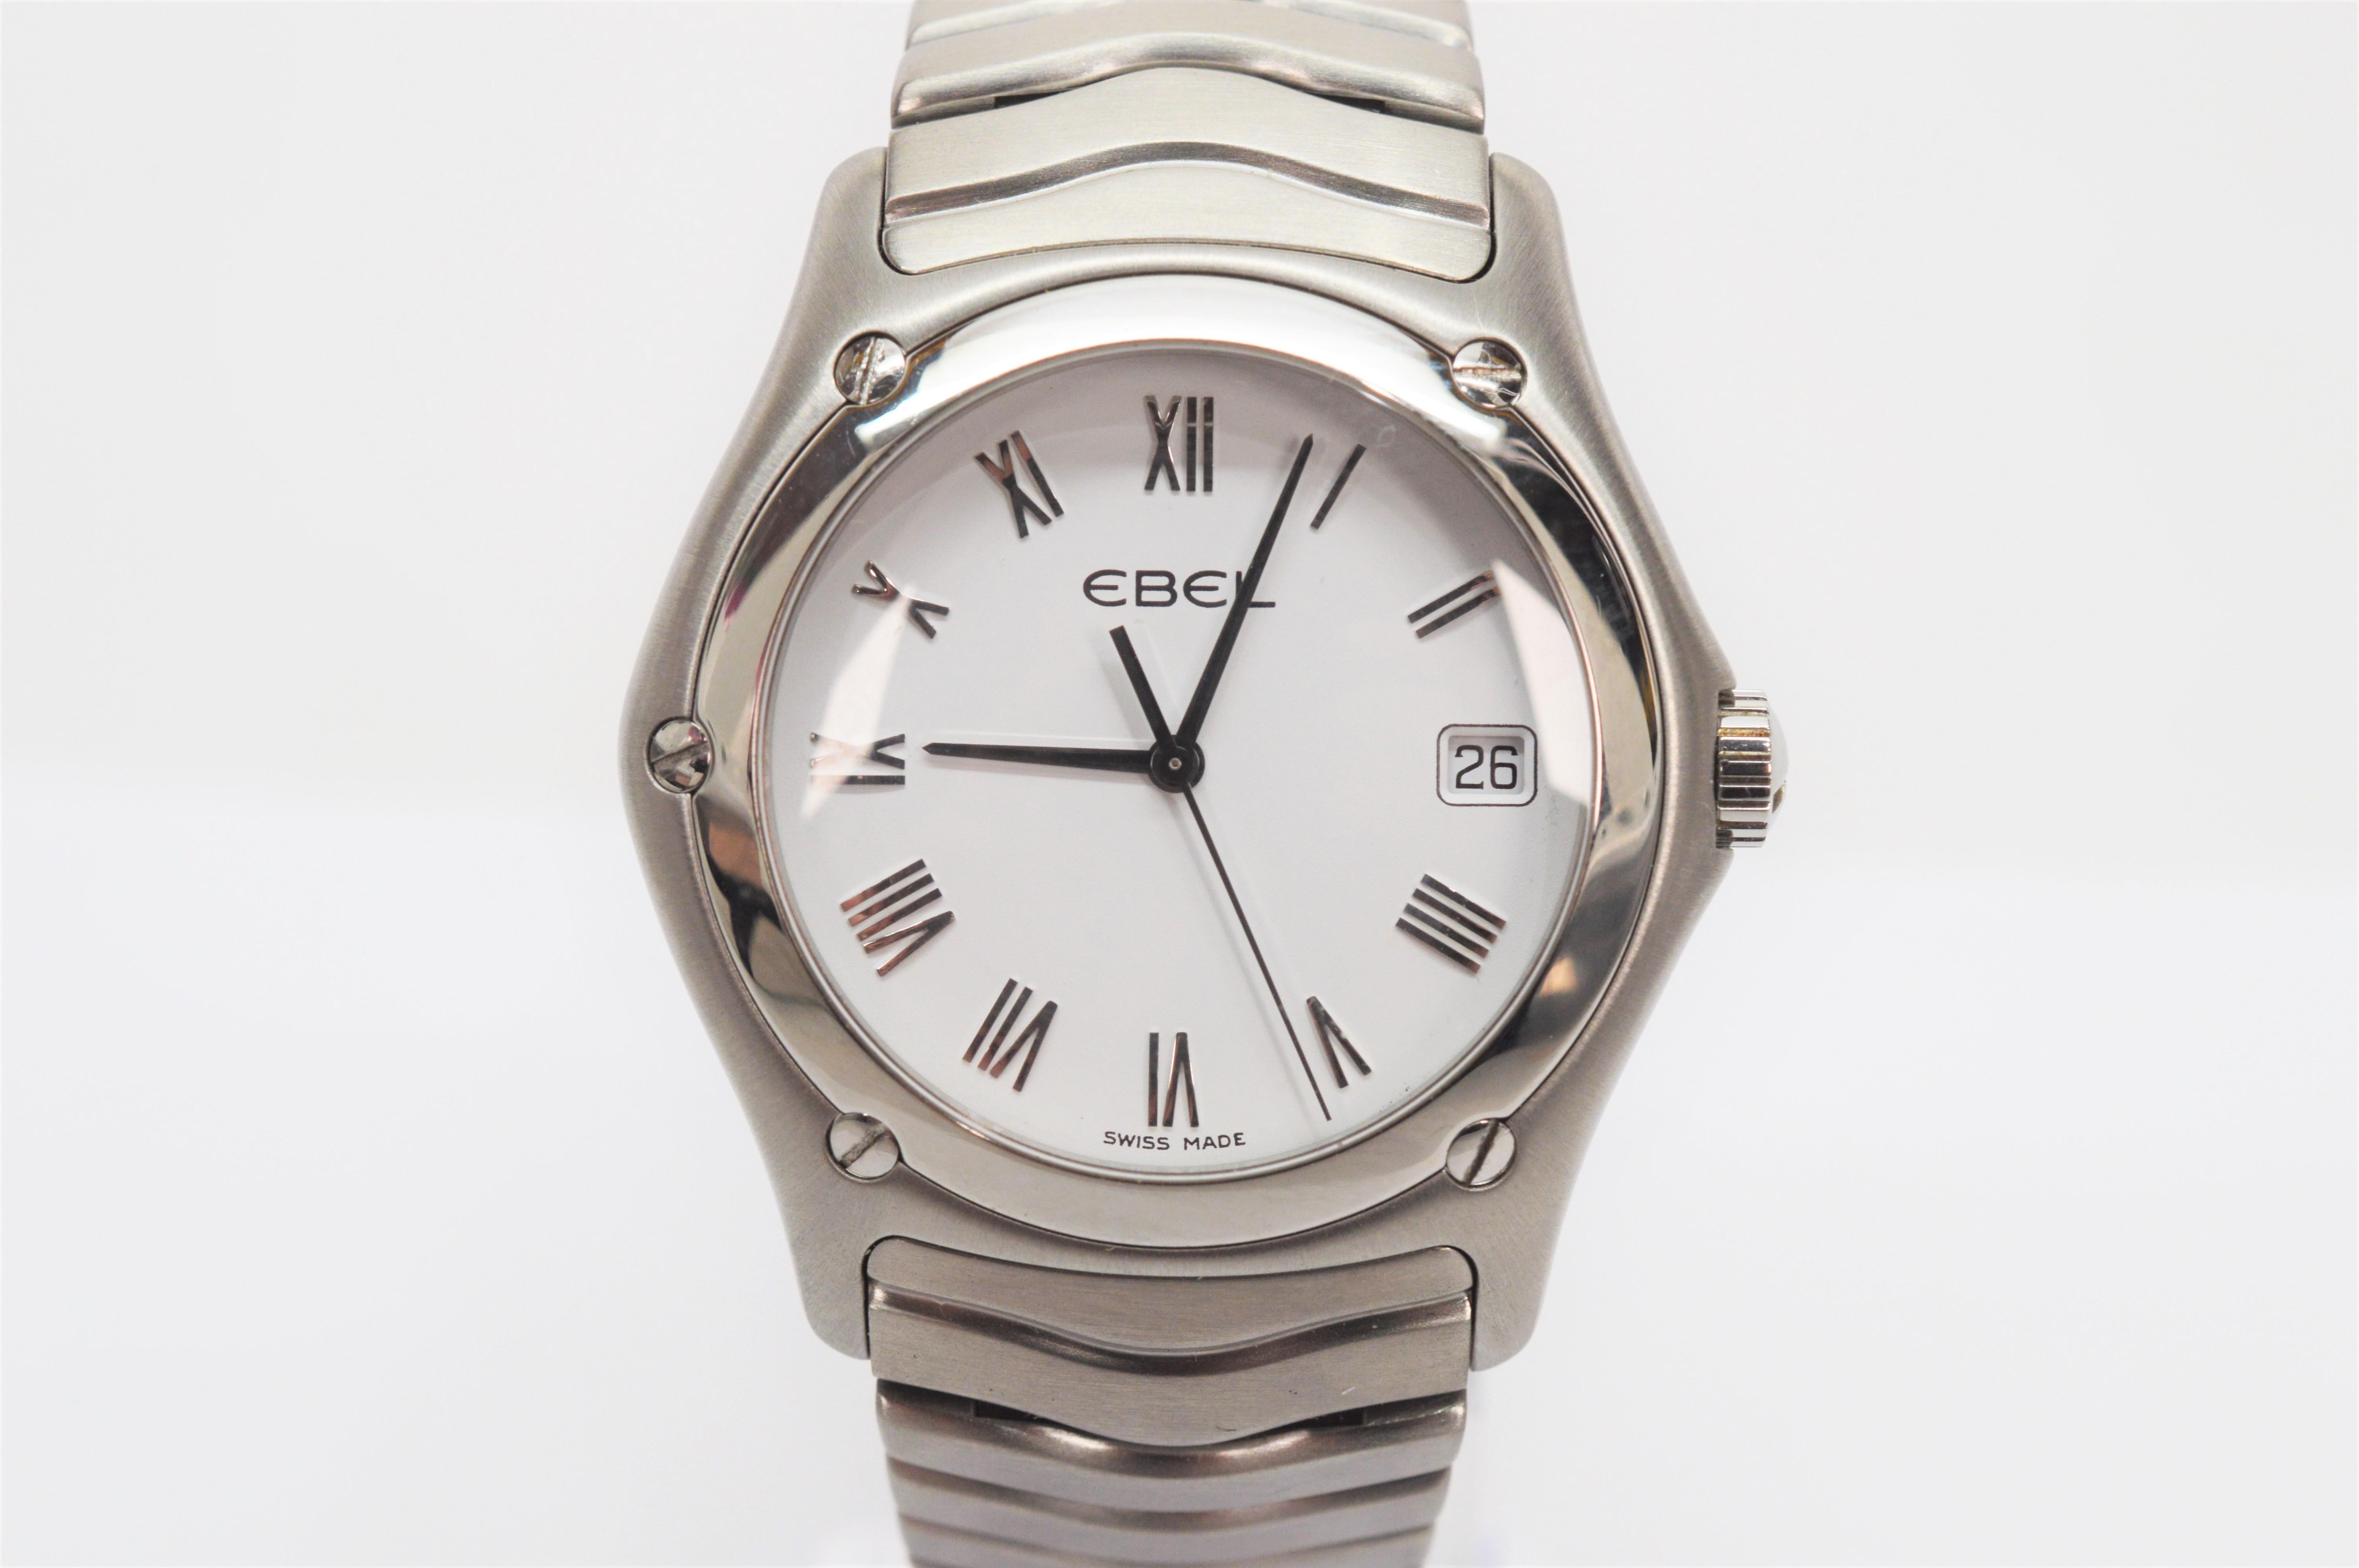 De fabrication suisse avec un design de montre de sport contemporain, la montre Ebel Classic en acier inoxydable pour hommes / unisexe Numéro de modèle E9187F41. Le boîtier de la montre en acier inoxydable mesure 37 mm et la taille du poignet est de